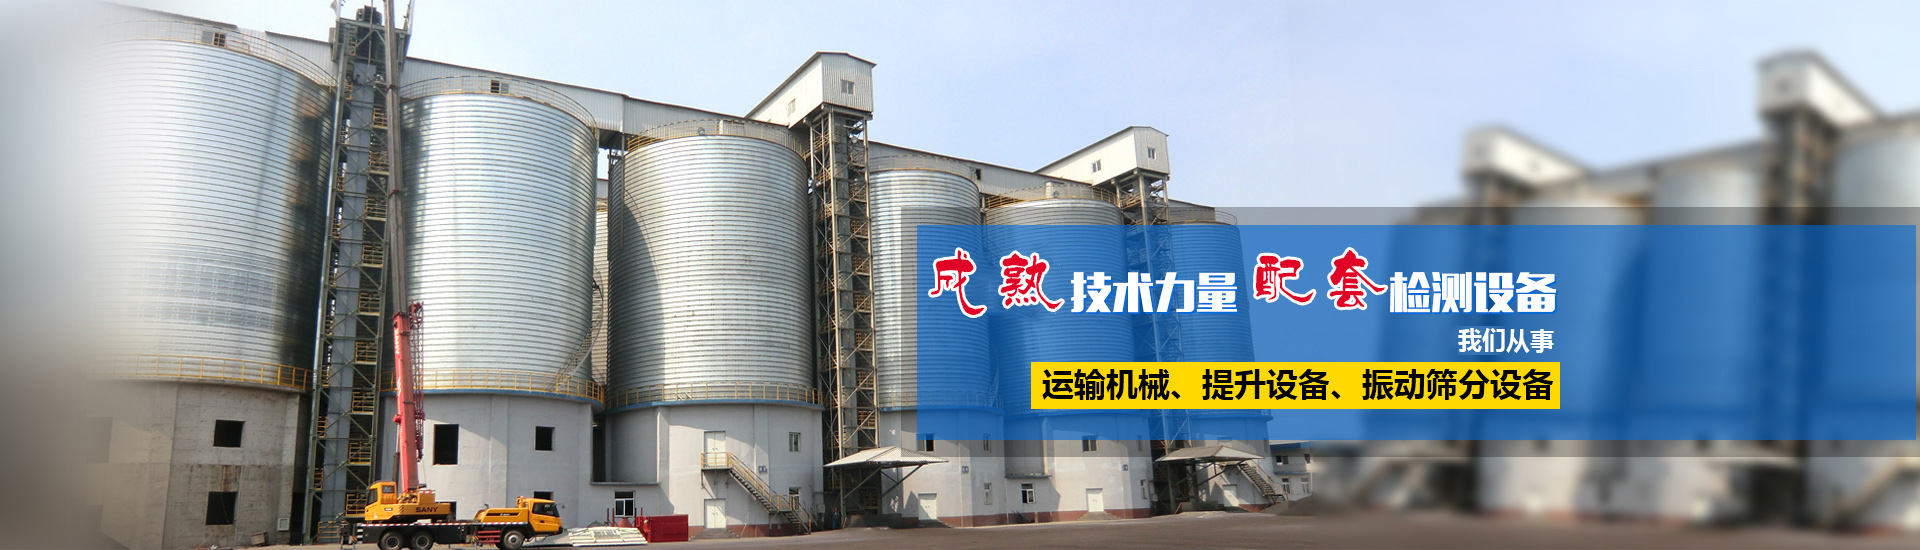 河南省新钢机械设备有限公司